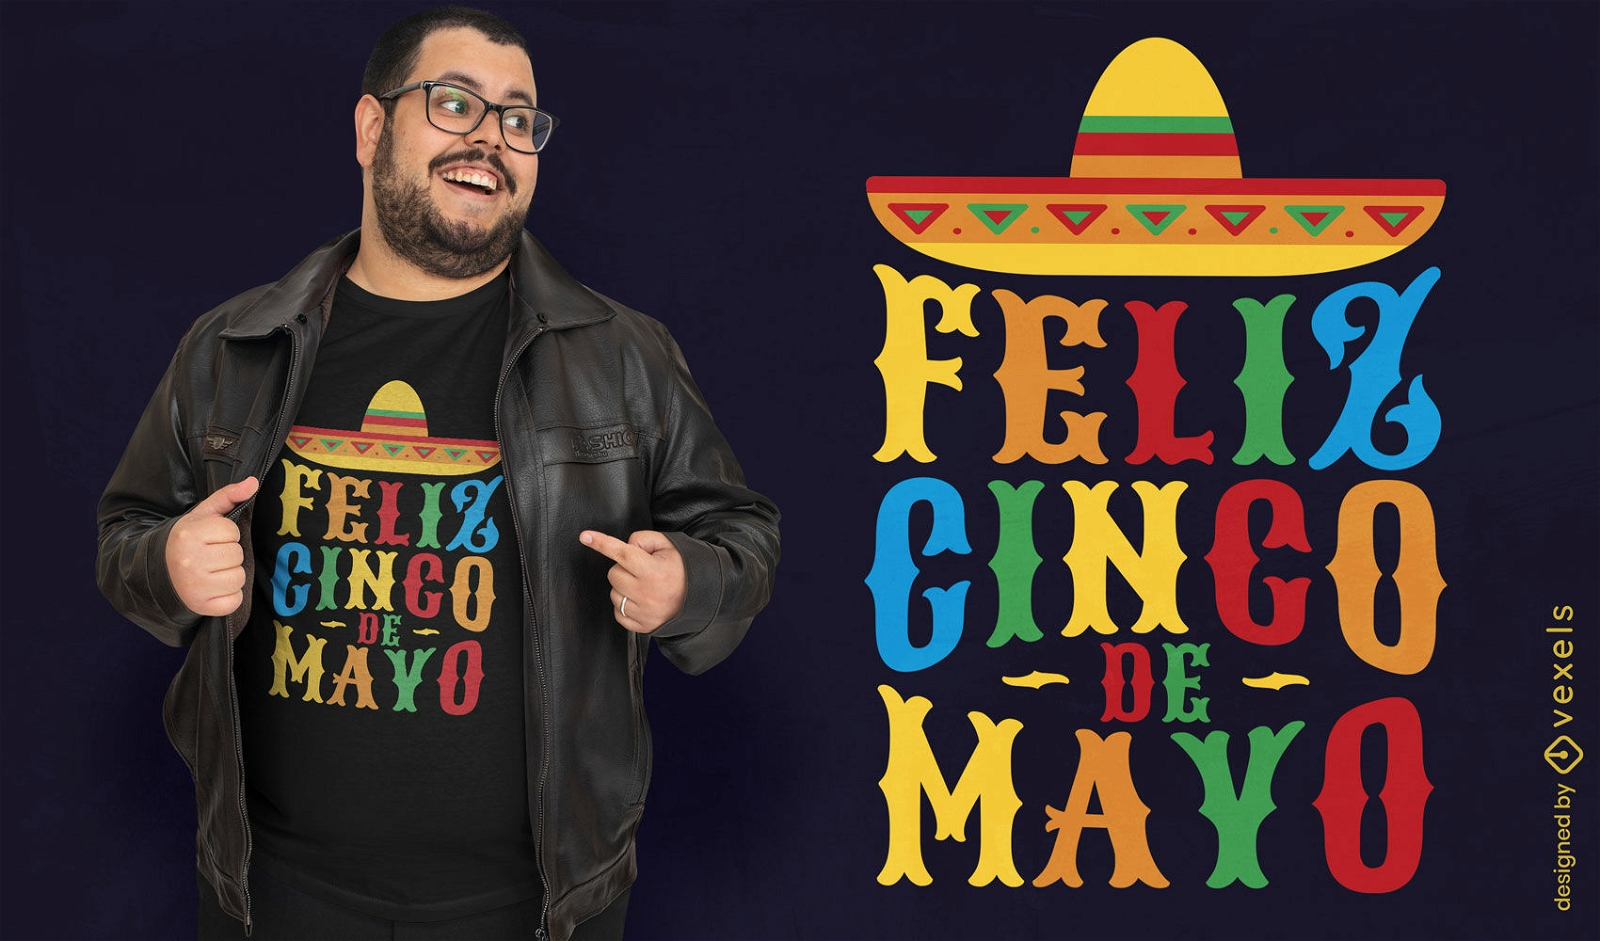 Cinco de Mayo mexikanisches Feiertags-T-Shirt Design